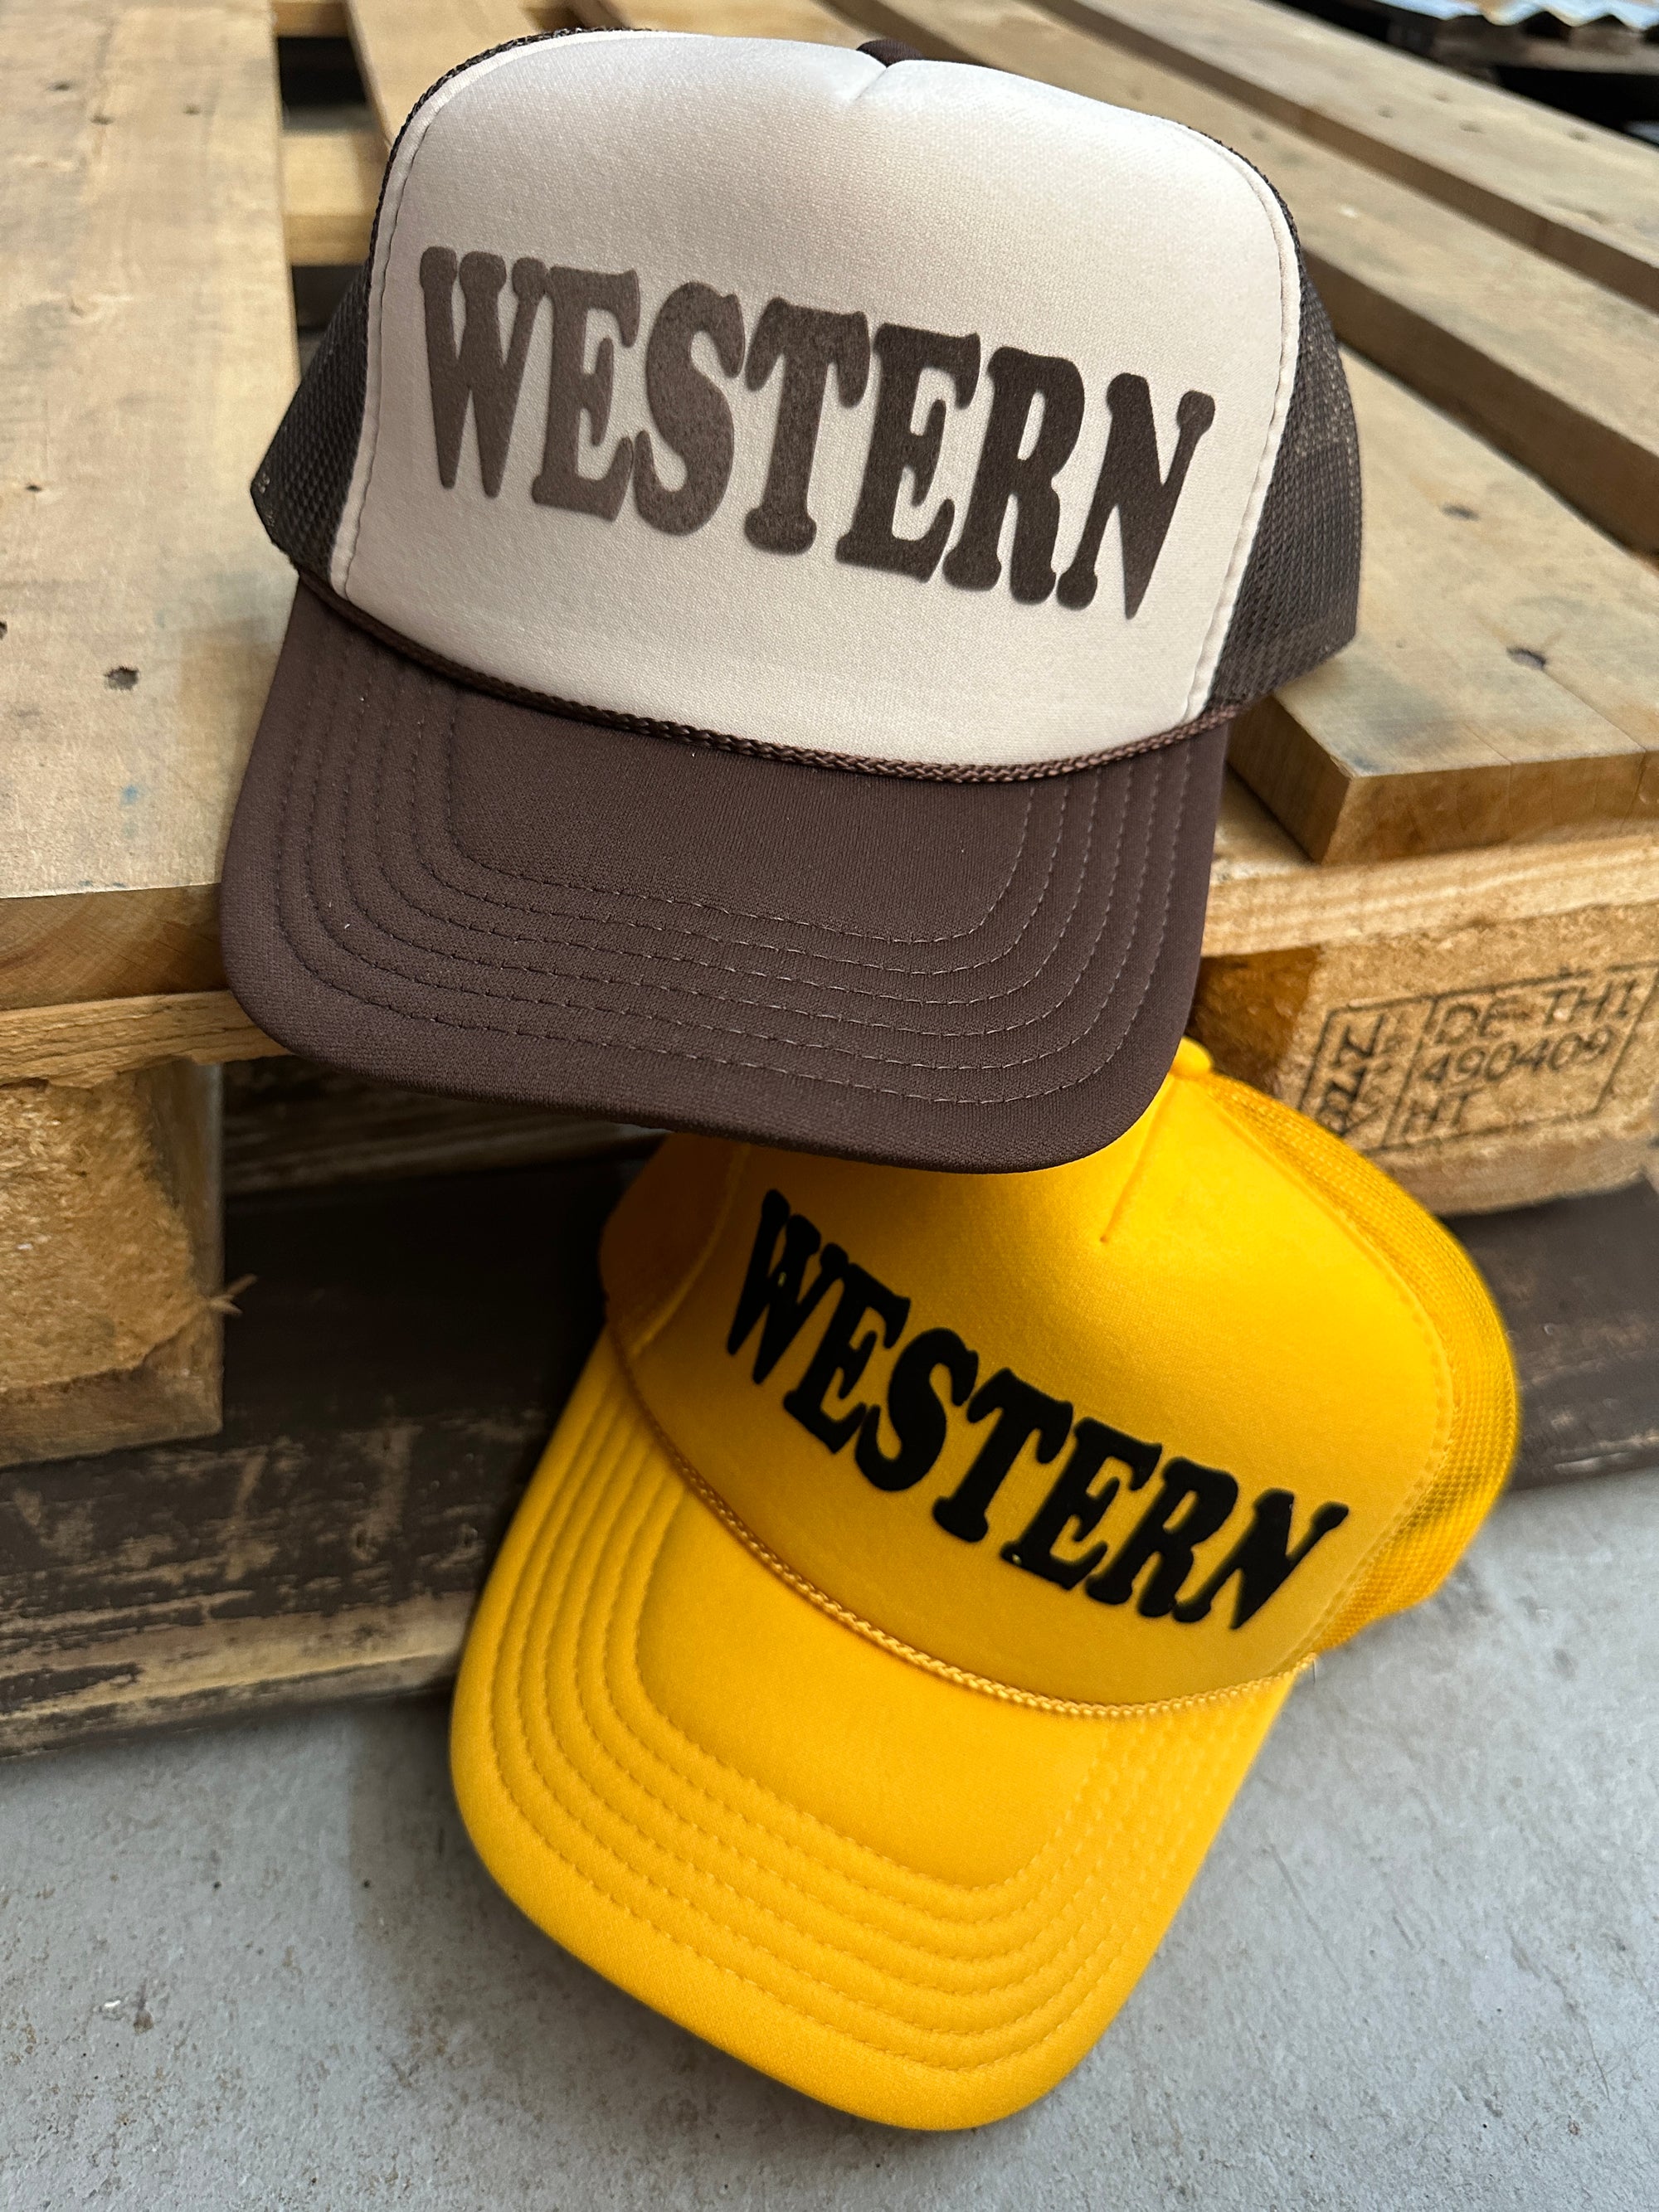 WESTERN Snap Back Trucker Hats